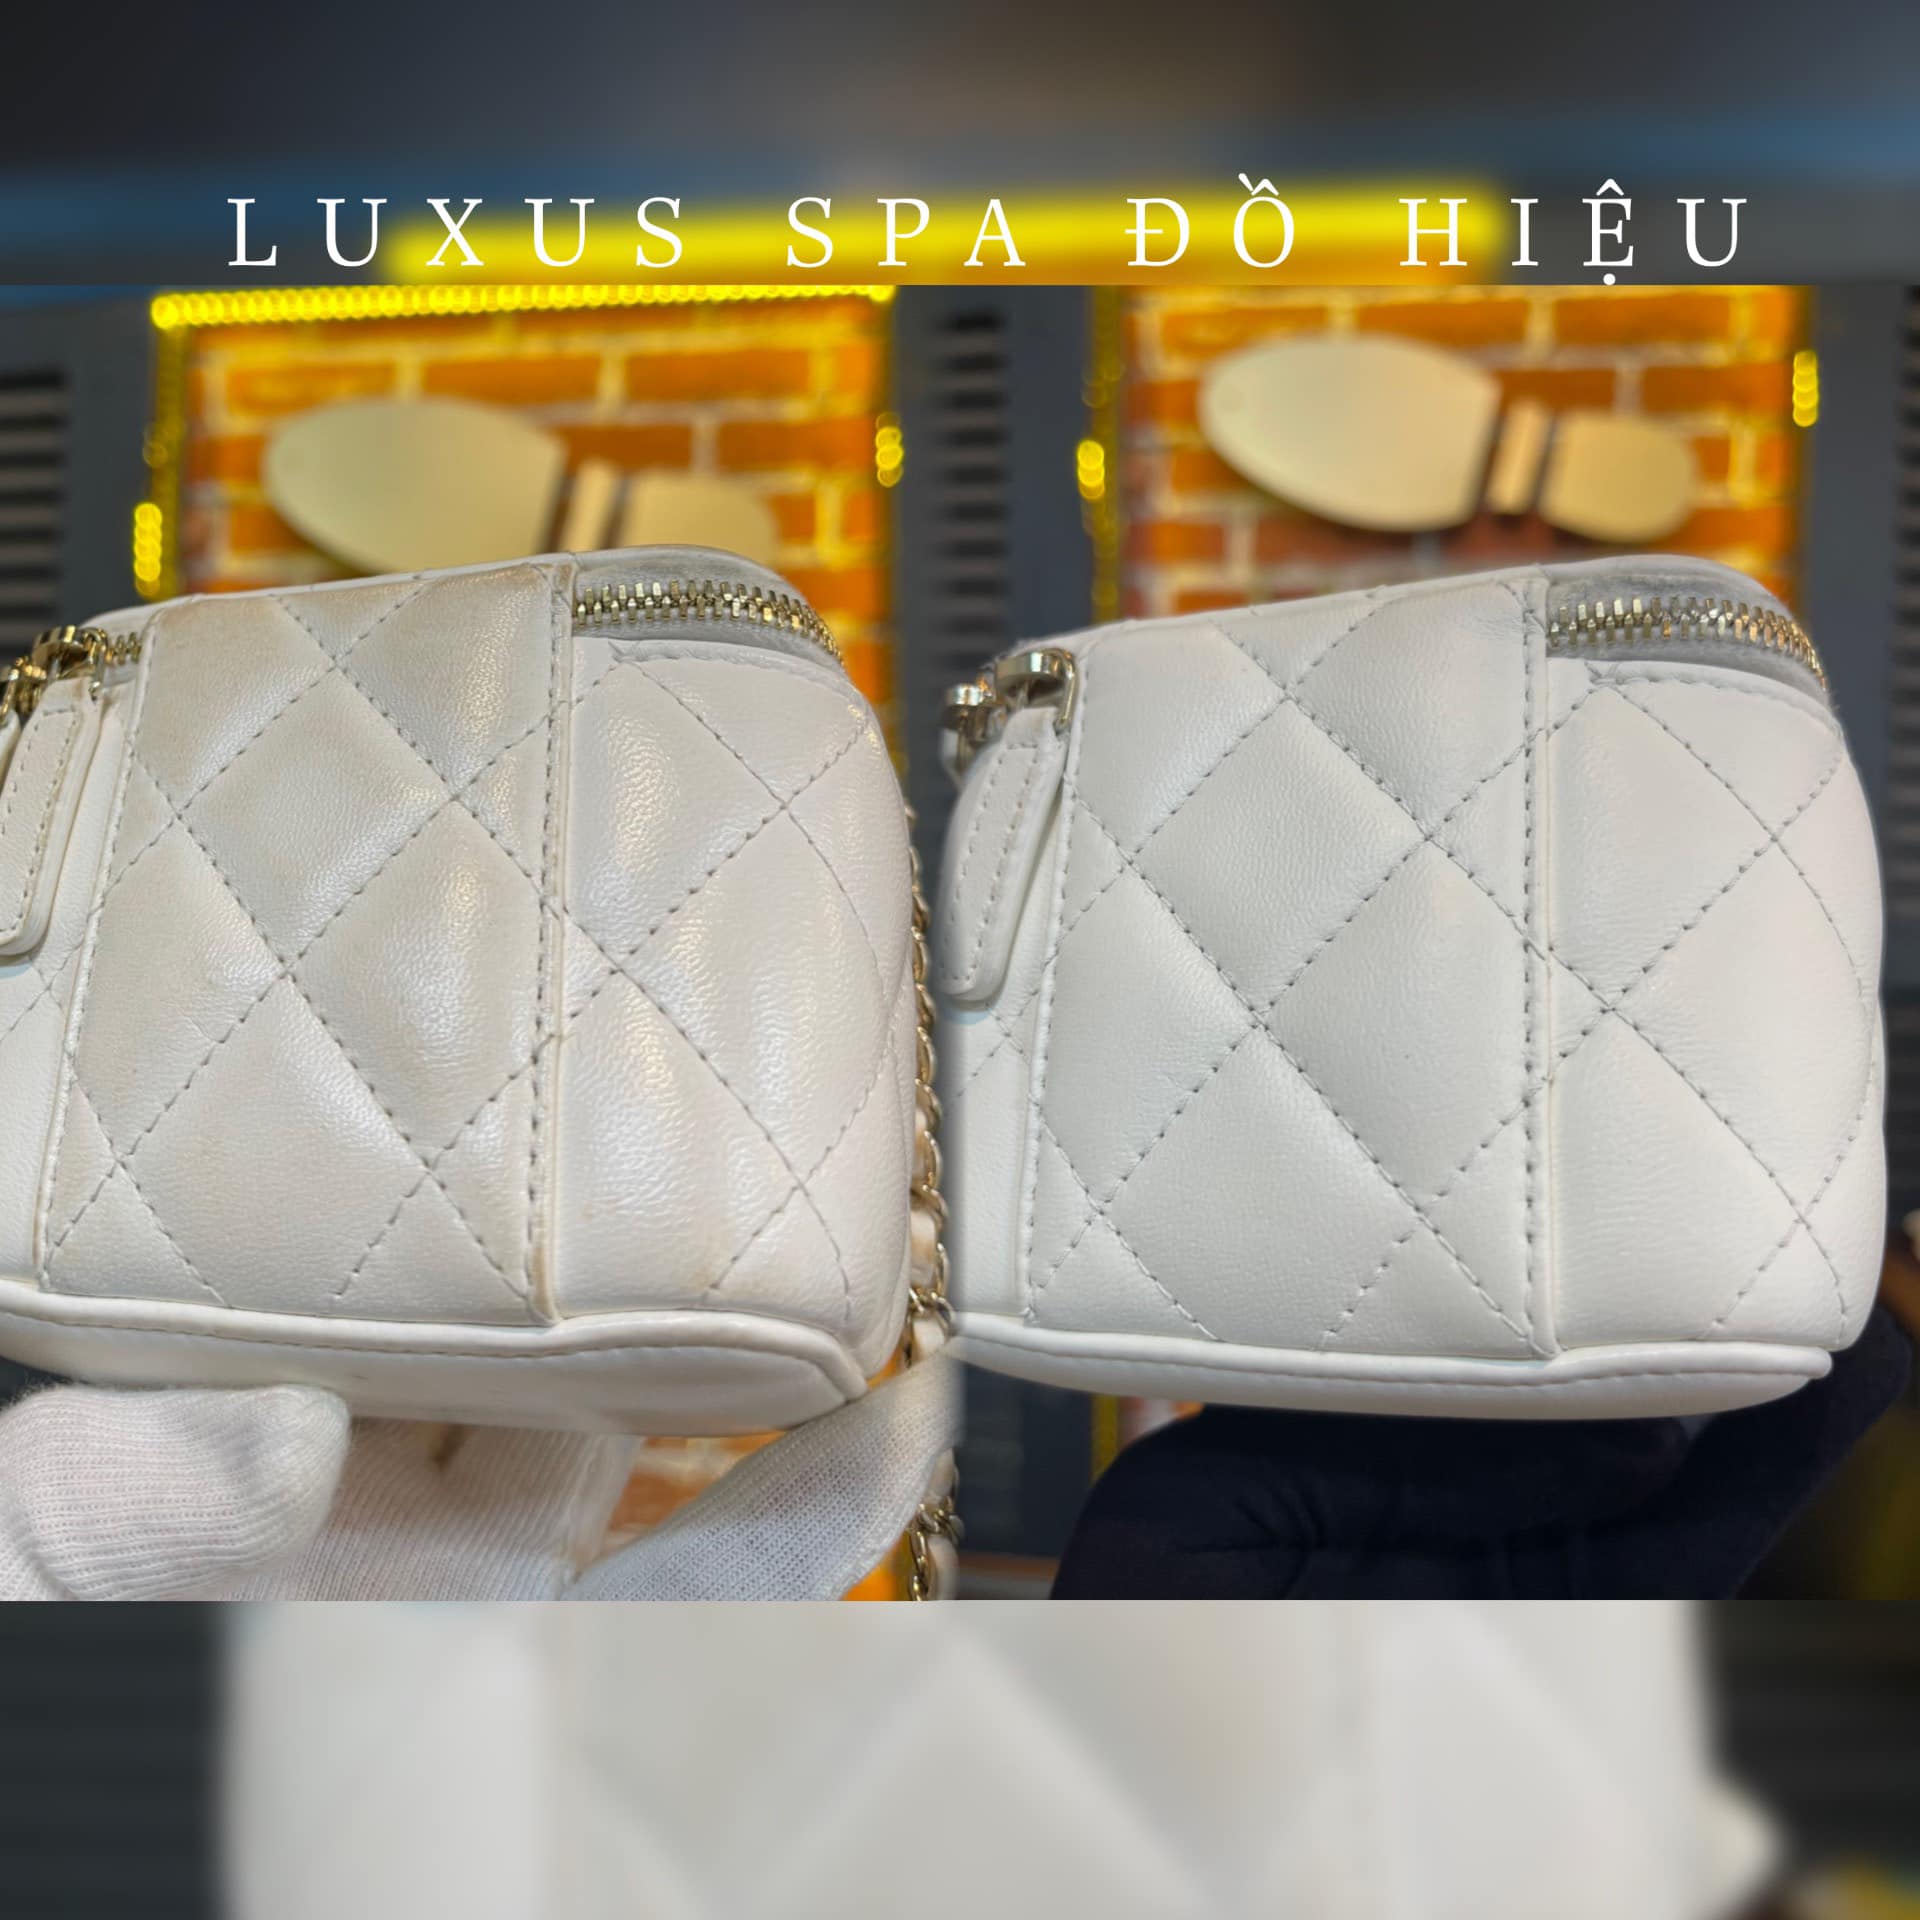 Cửa hàng vệ sinh túi, spa đồ hiệu Luxus